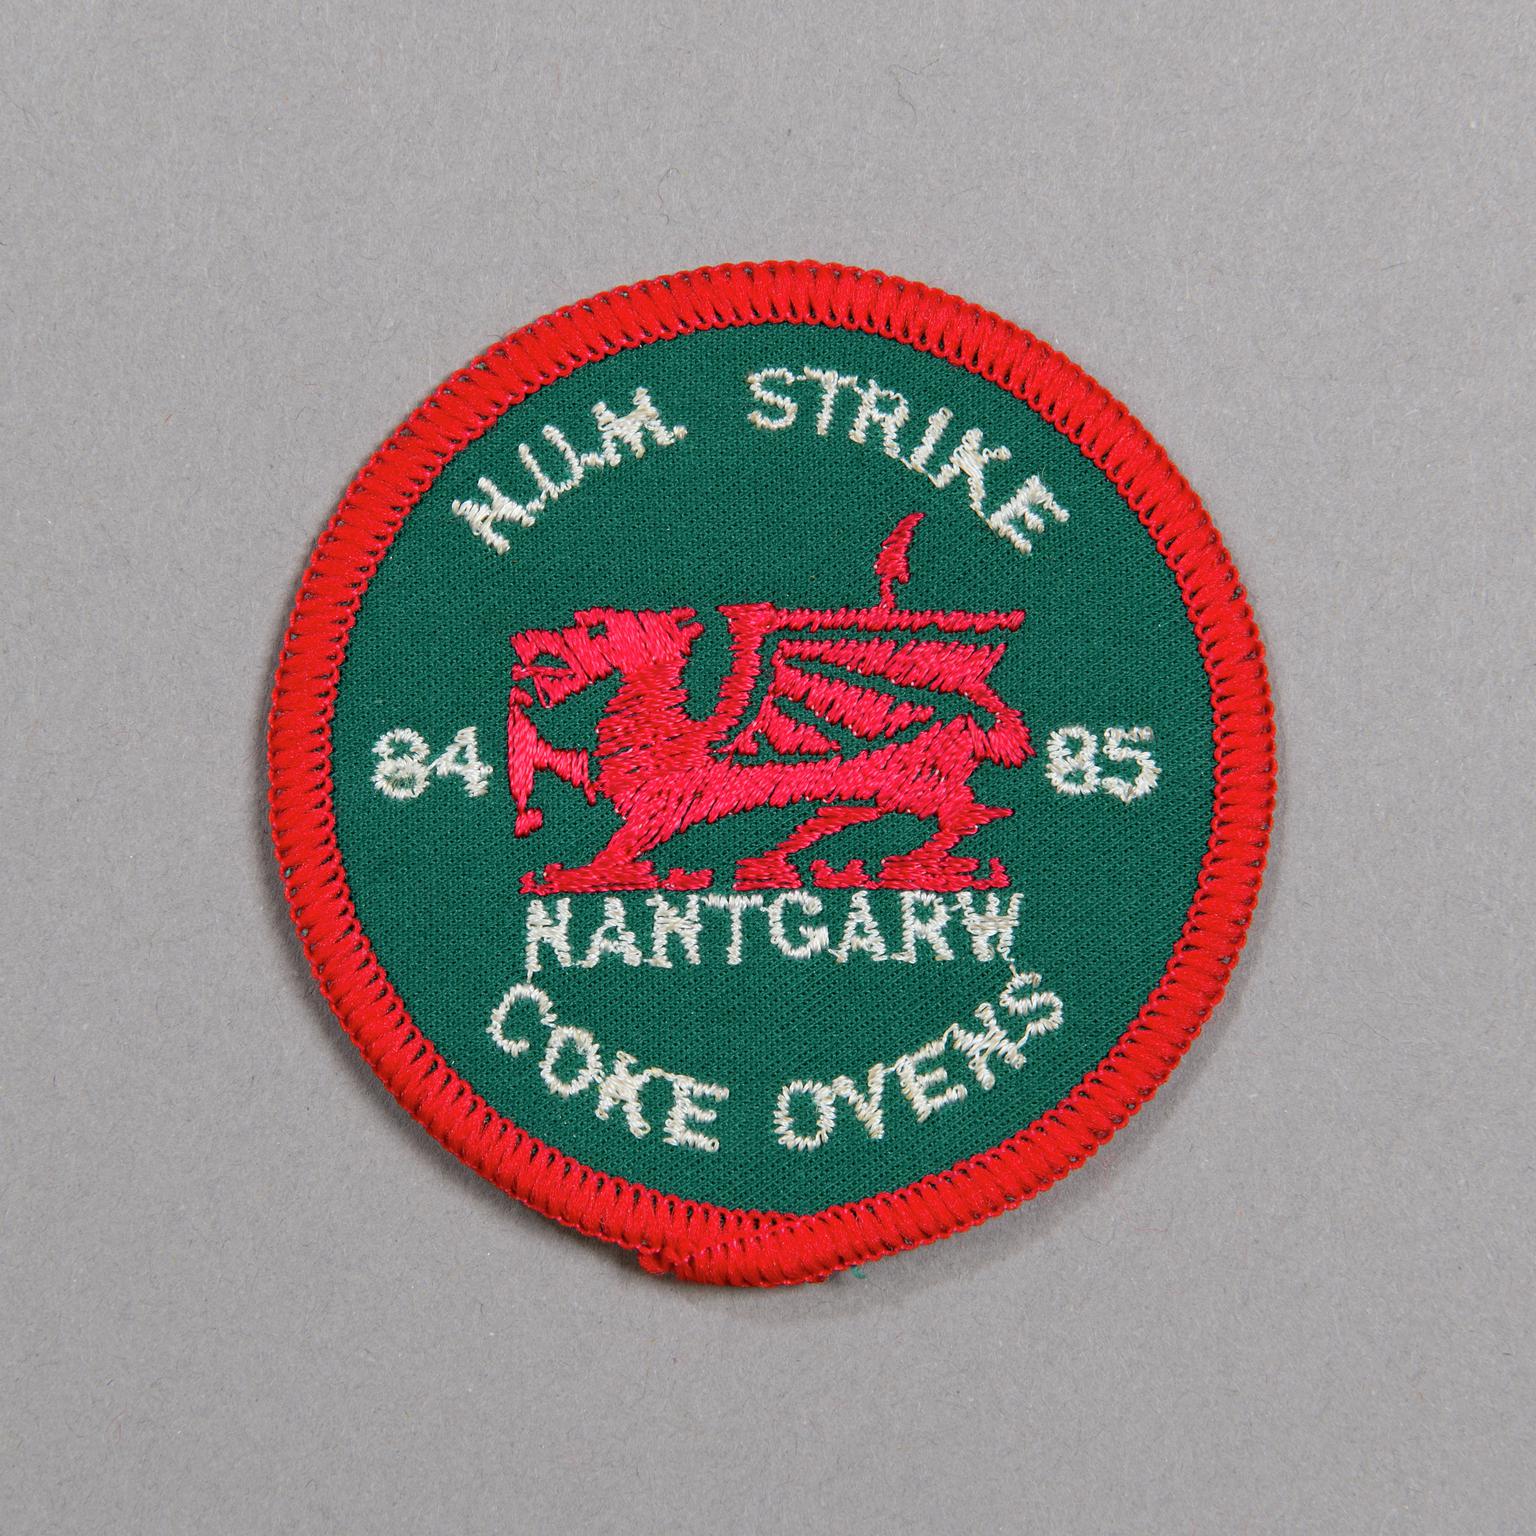 N.U.M. Strike 84-85 Nantgarw Coke Ovens, badge